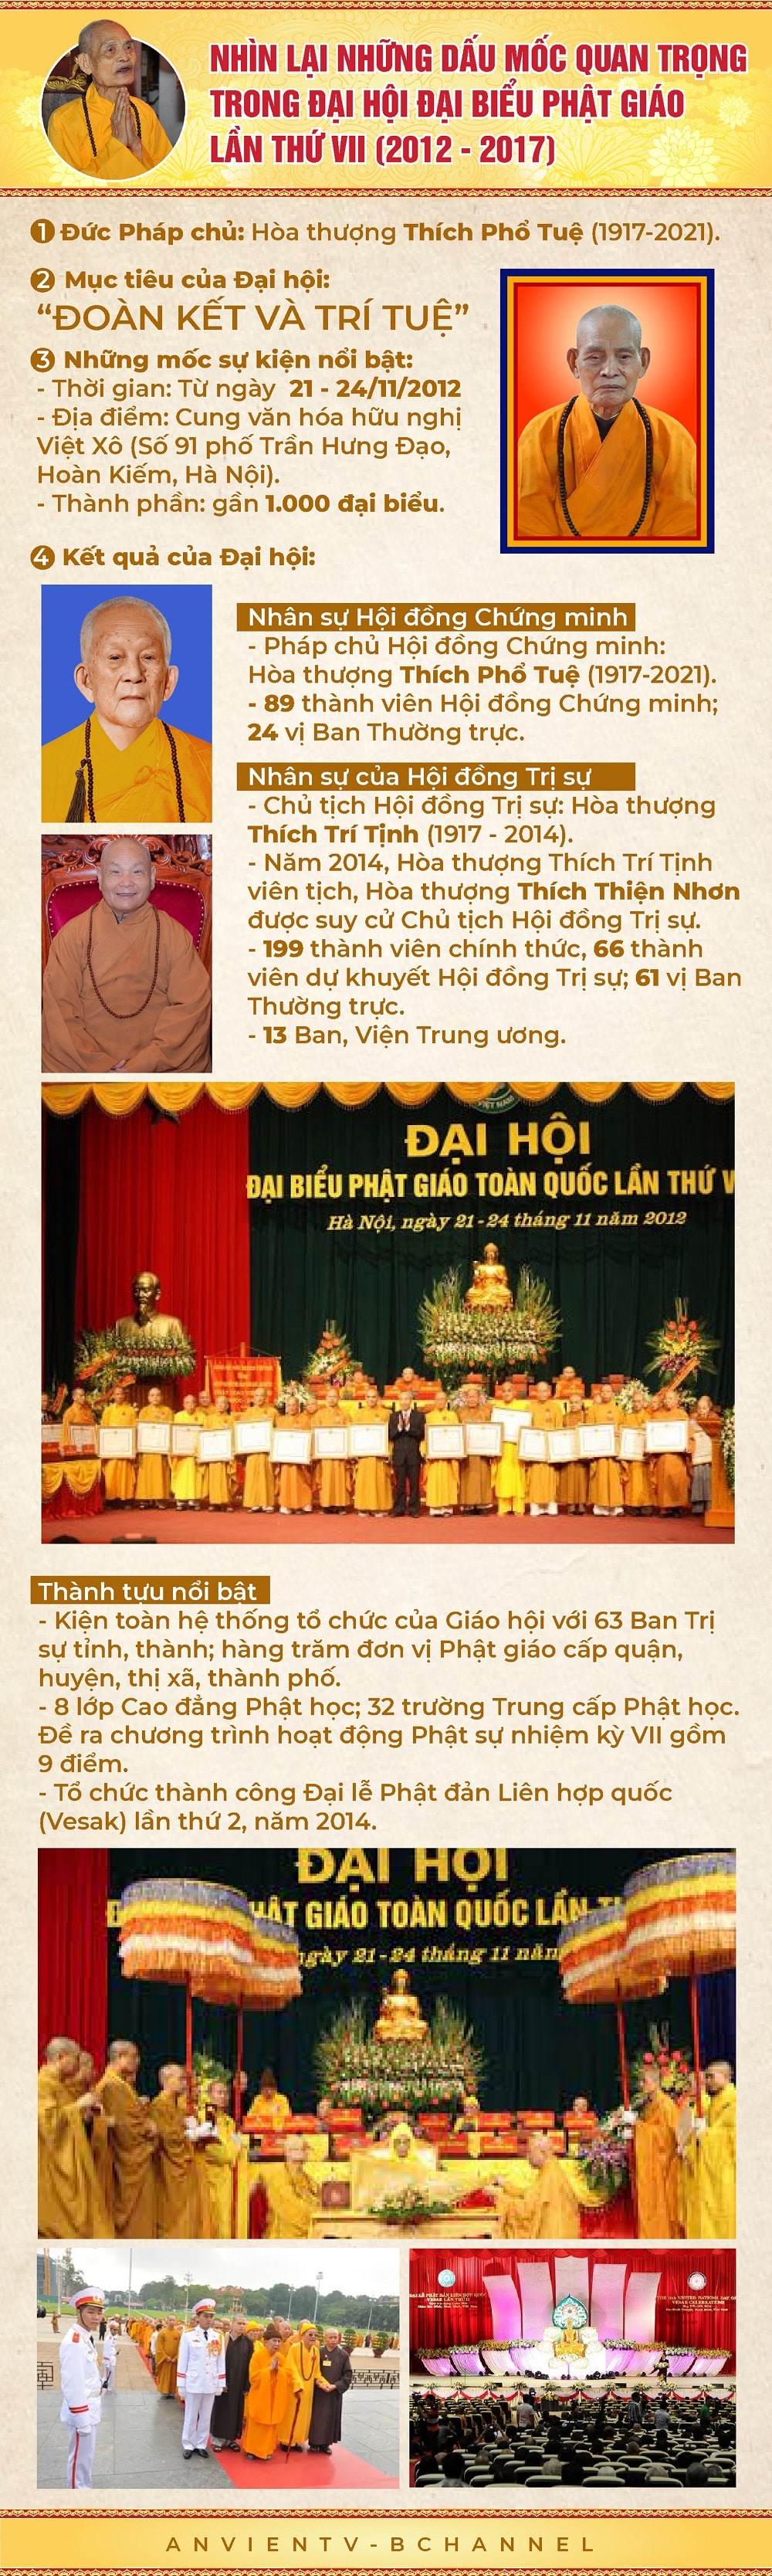 Đại hội đại biểu Phật giáo Toàn quốc lần thứ VII